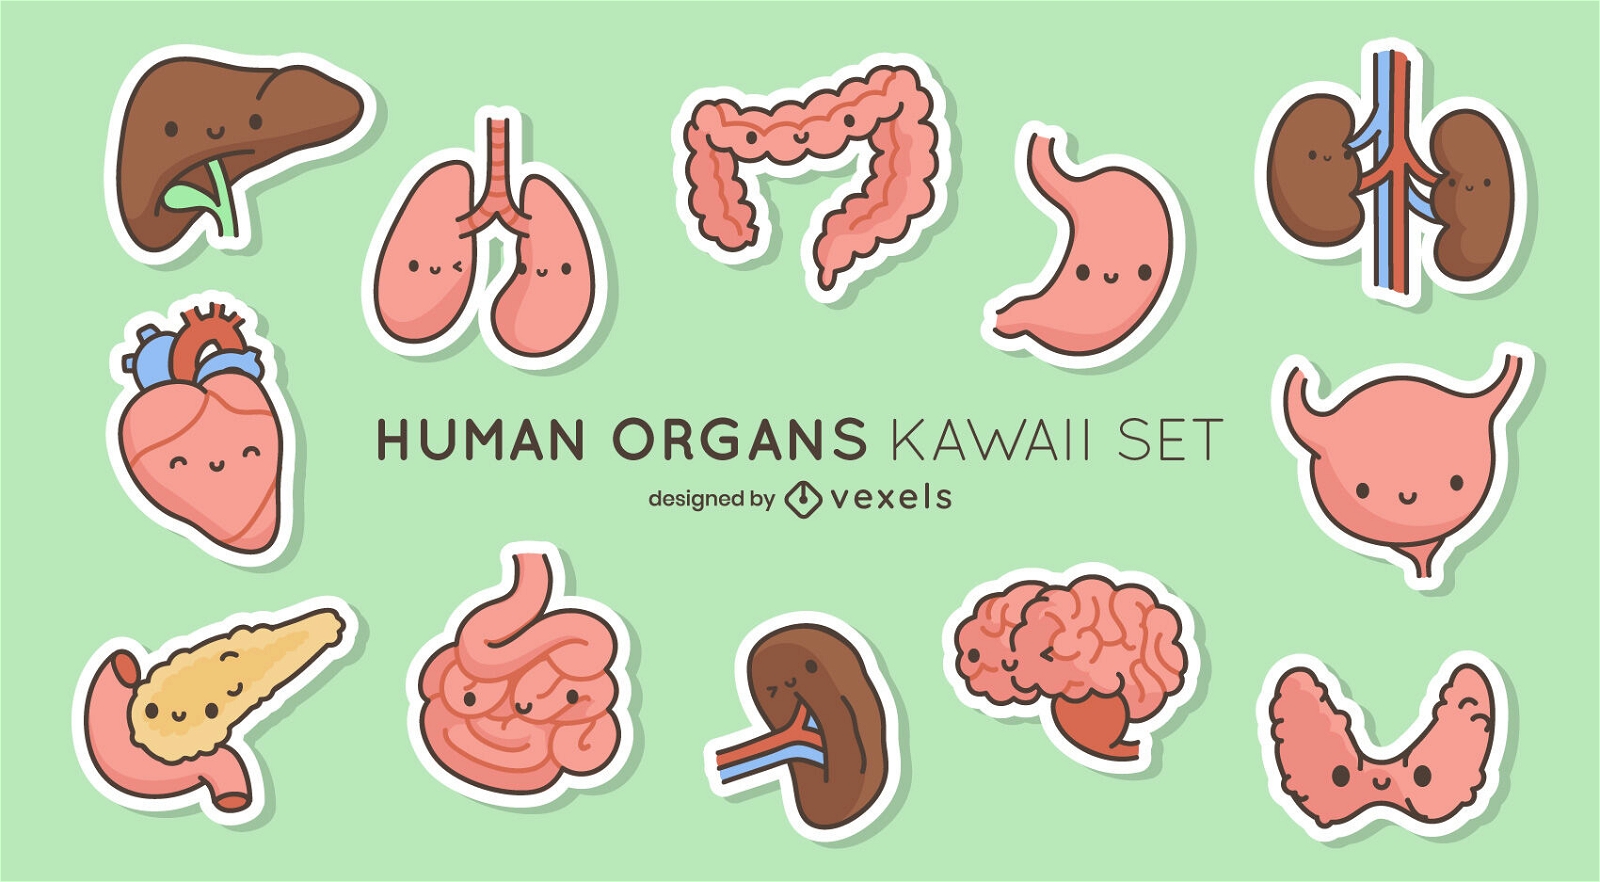 Kawaii human body organs antaomical set